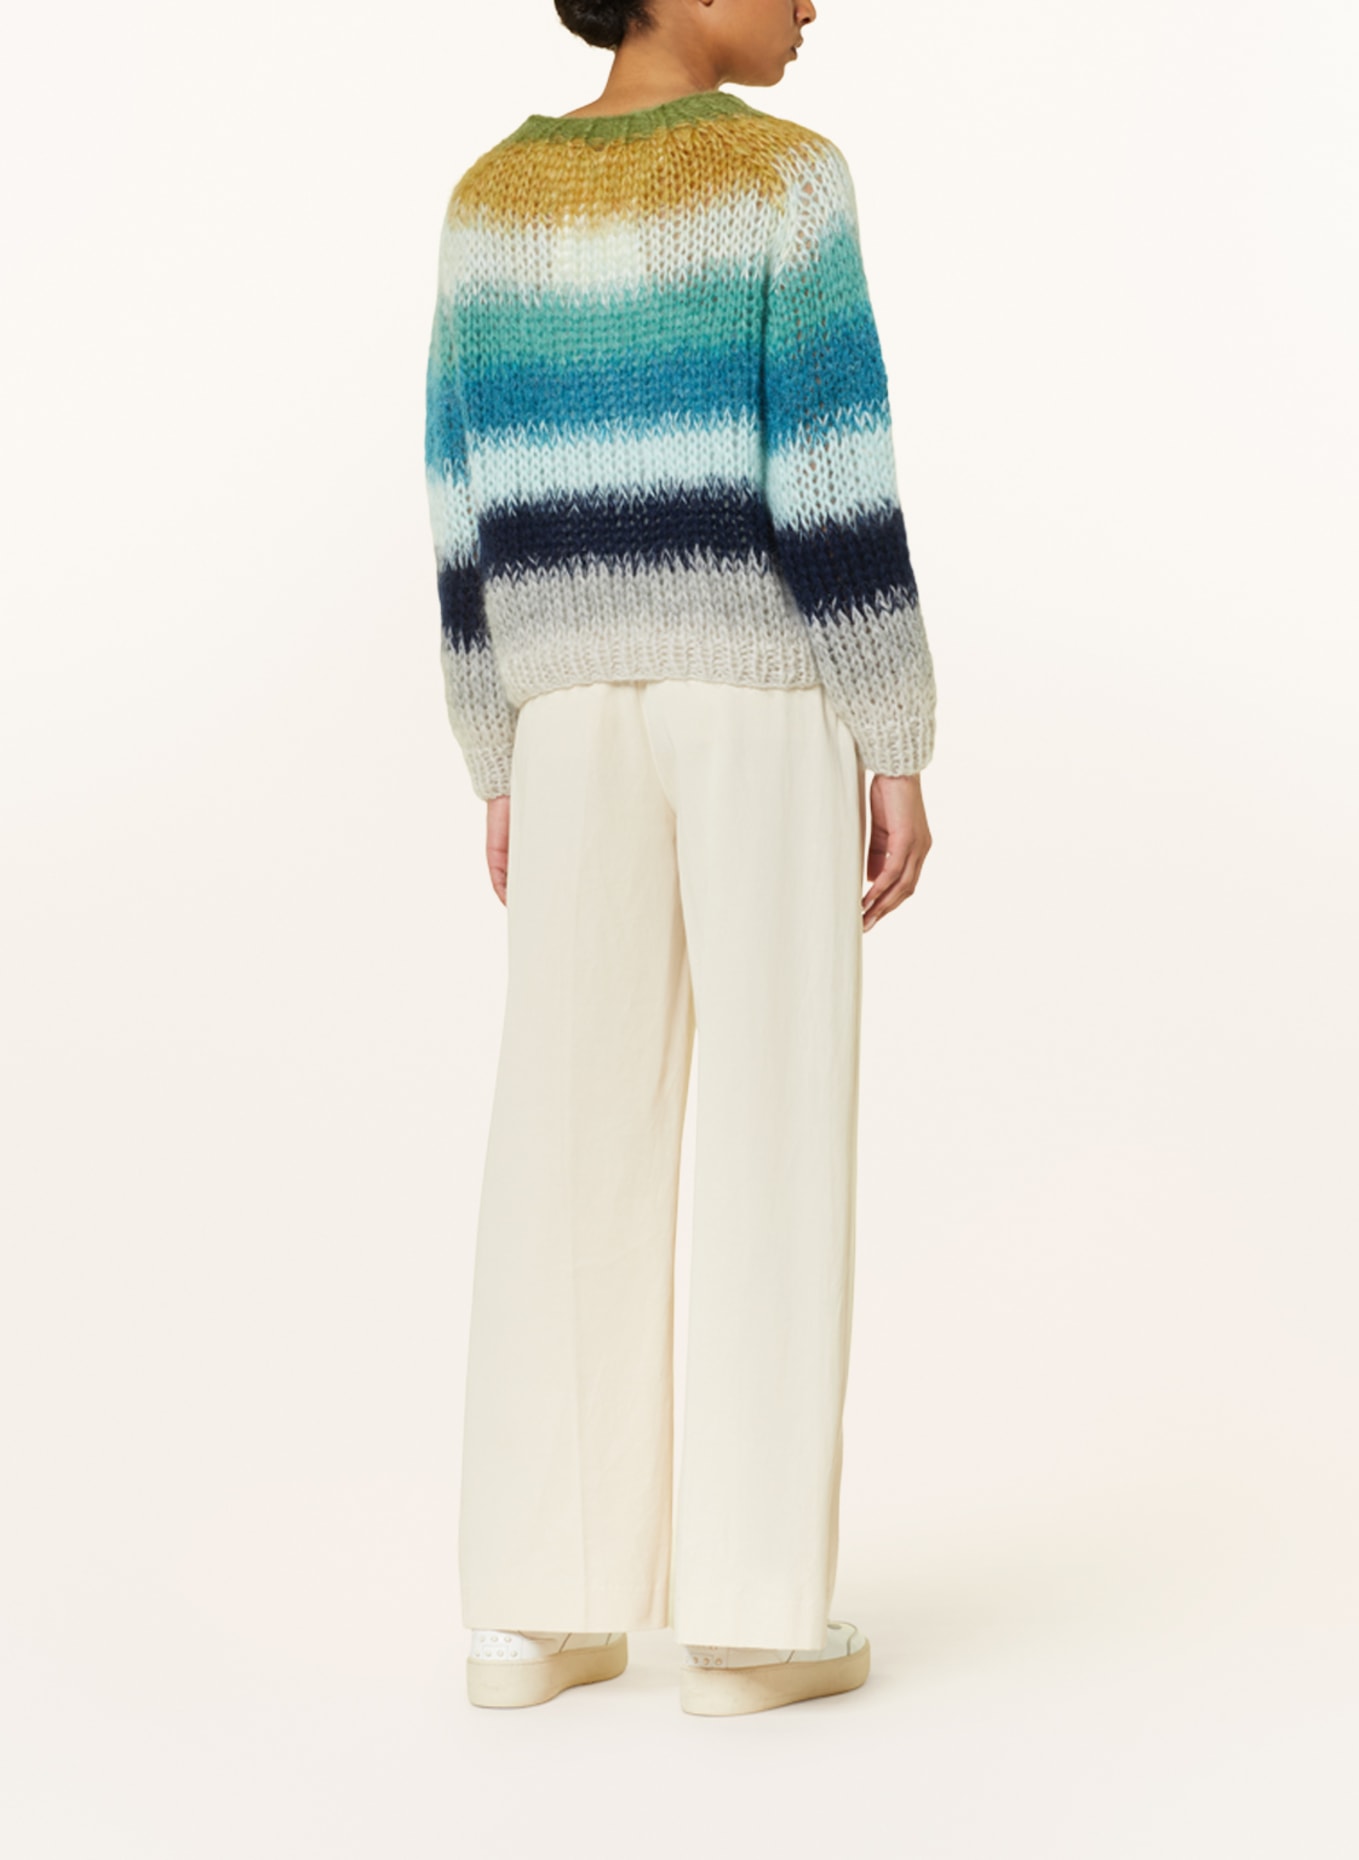 MAIAMI Pullover mit Mohair, Farbe: GRÜN/ BLAU/ GRAU (Bild 3)